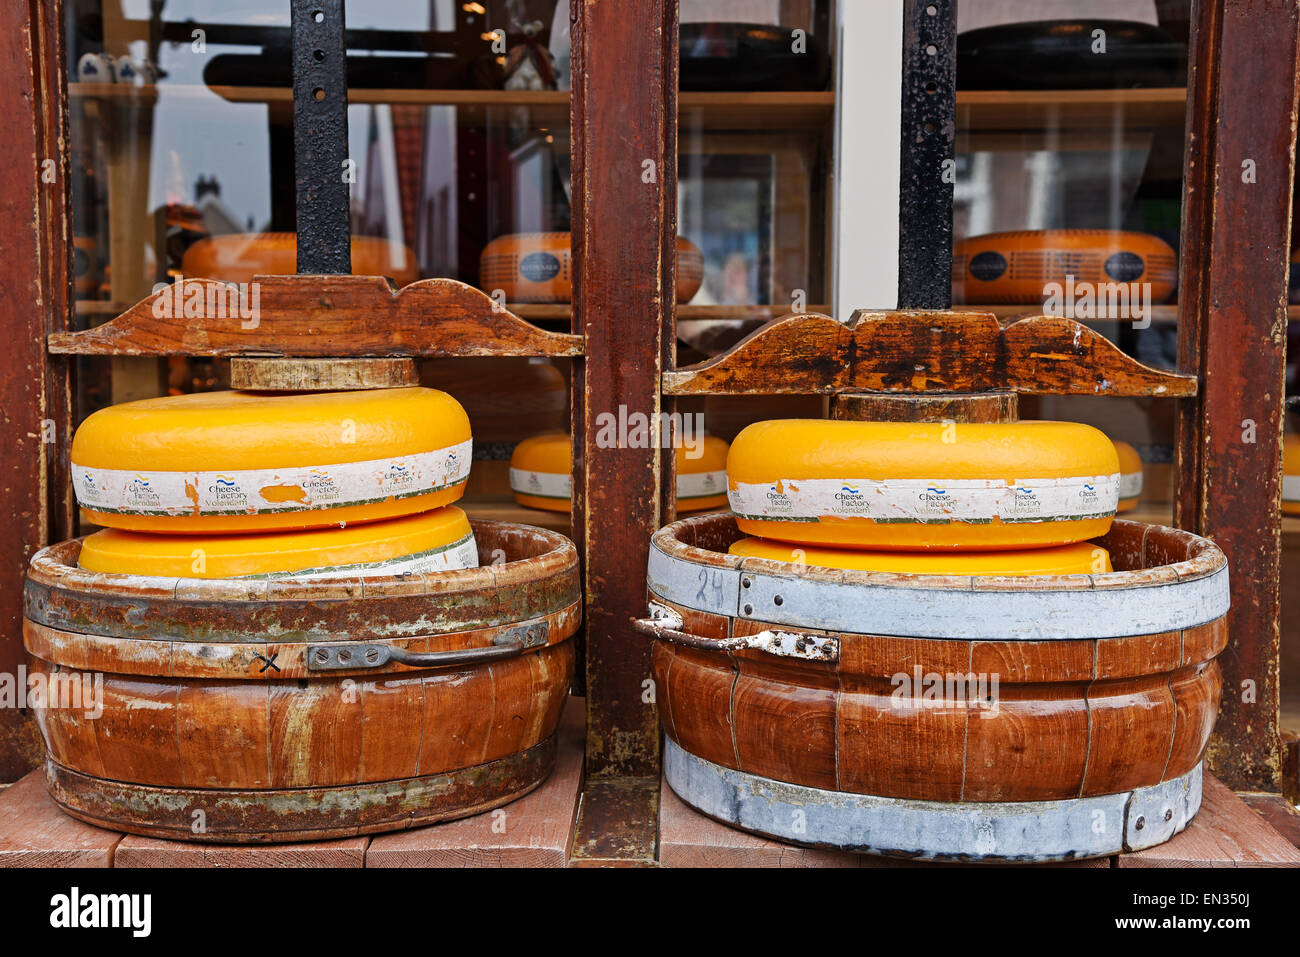 Roues de fromage dans un fromage, fromage Edam en face d'une fromagerie, Edam-Volendam, province de Liège Banque D'Images